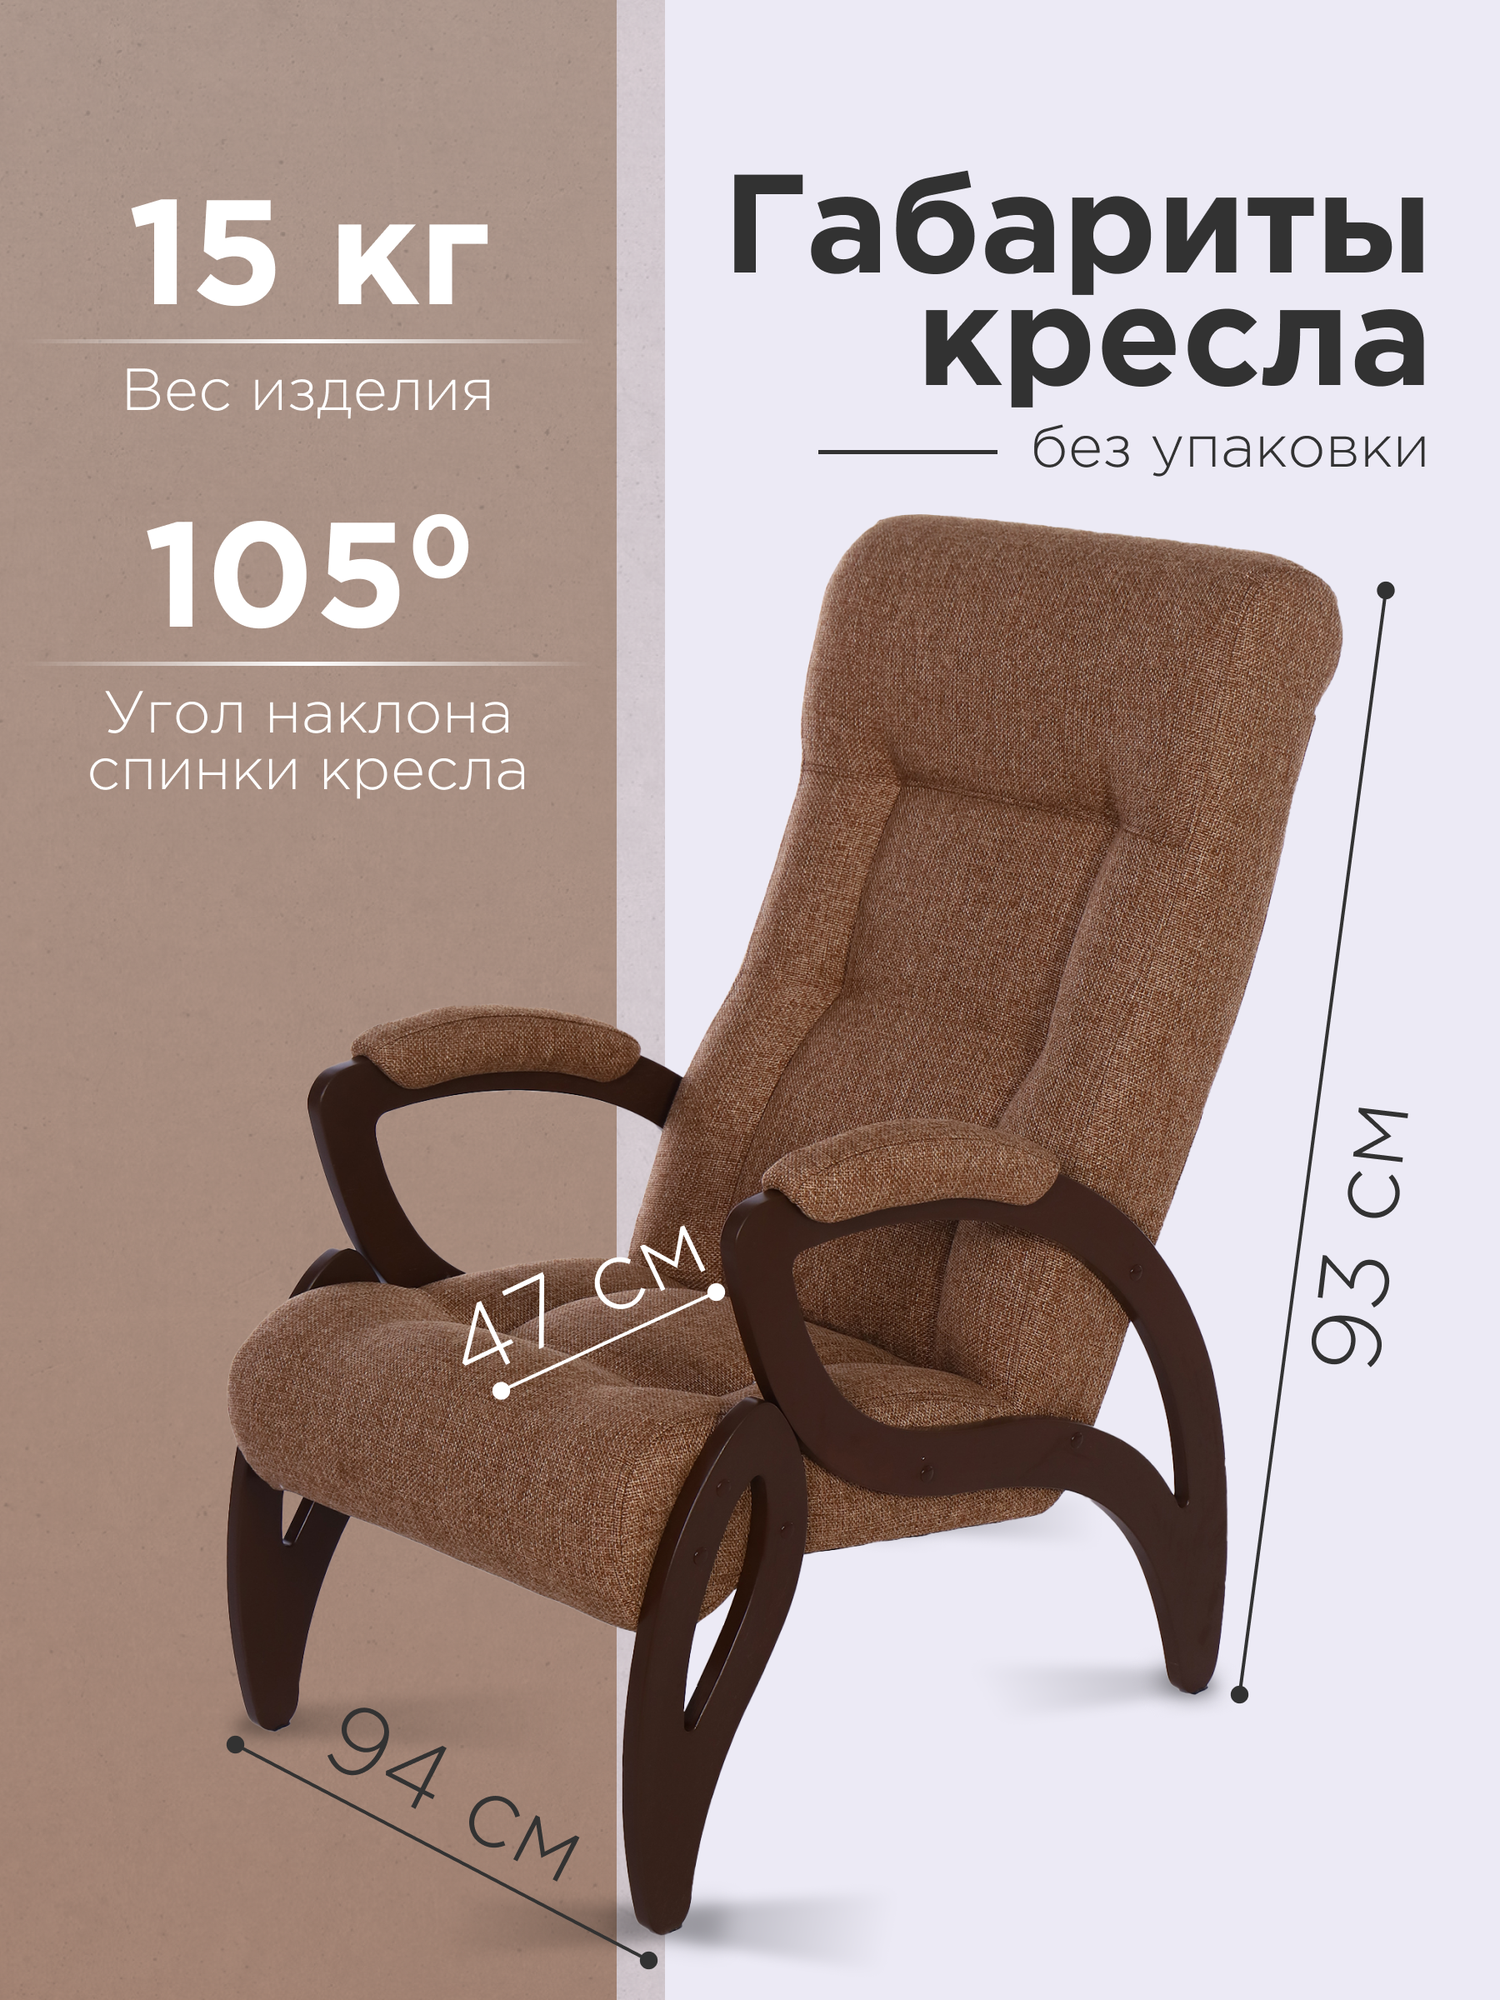 Кресло "Женева", тип ткани - рогожка, цвет светло-коричневый, ДеСтейл